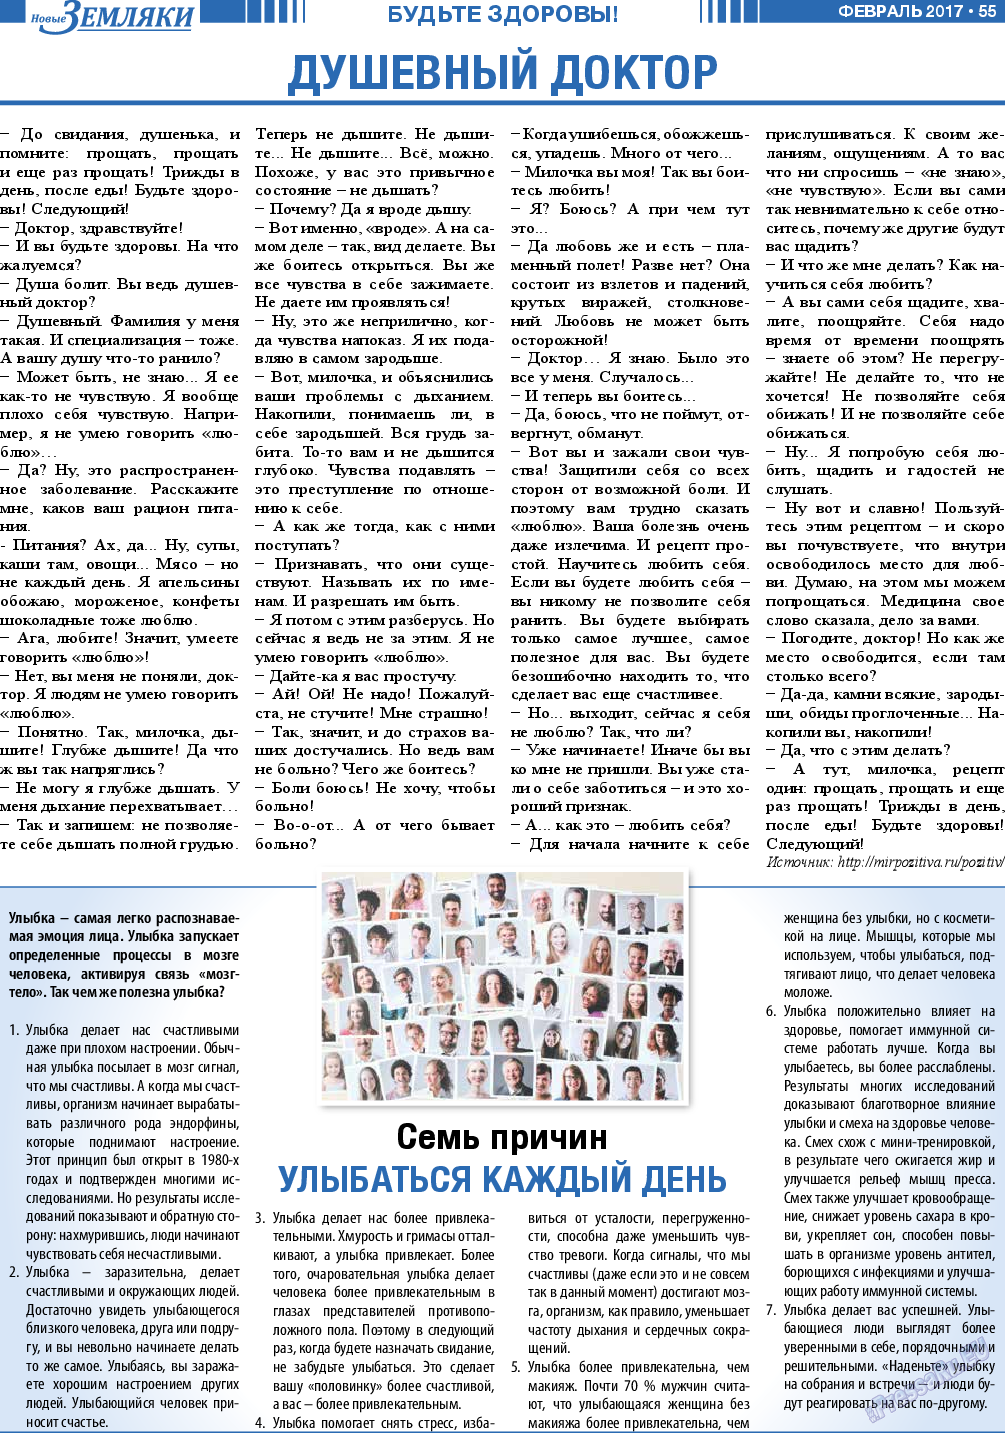 Новые Земляки, газета. 2017 №2 стр.55